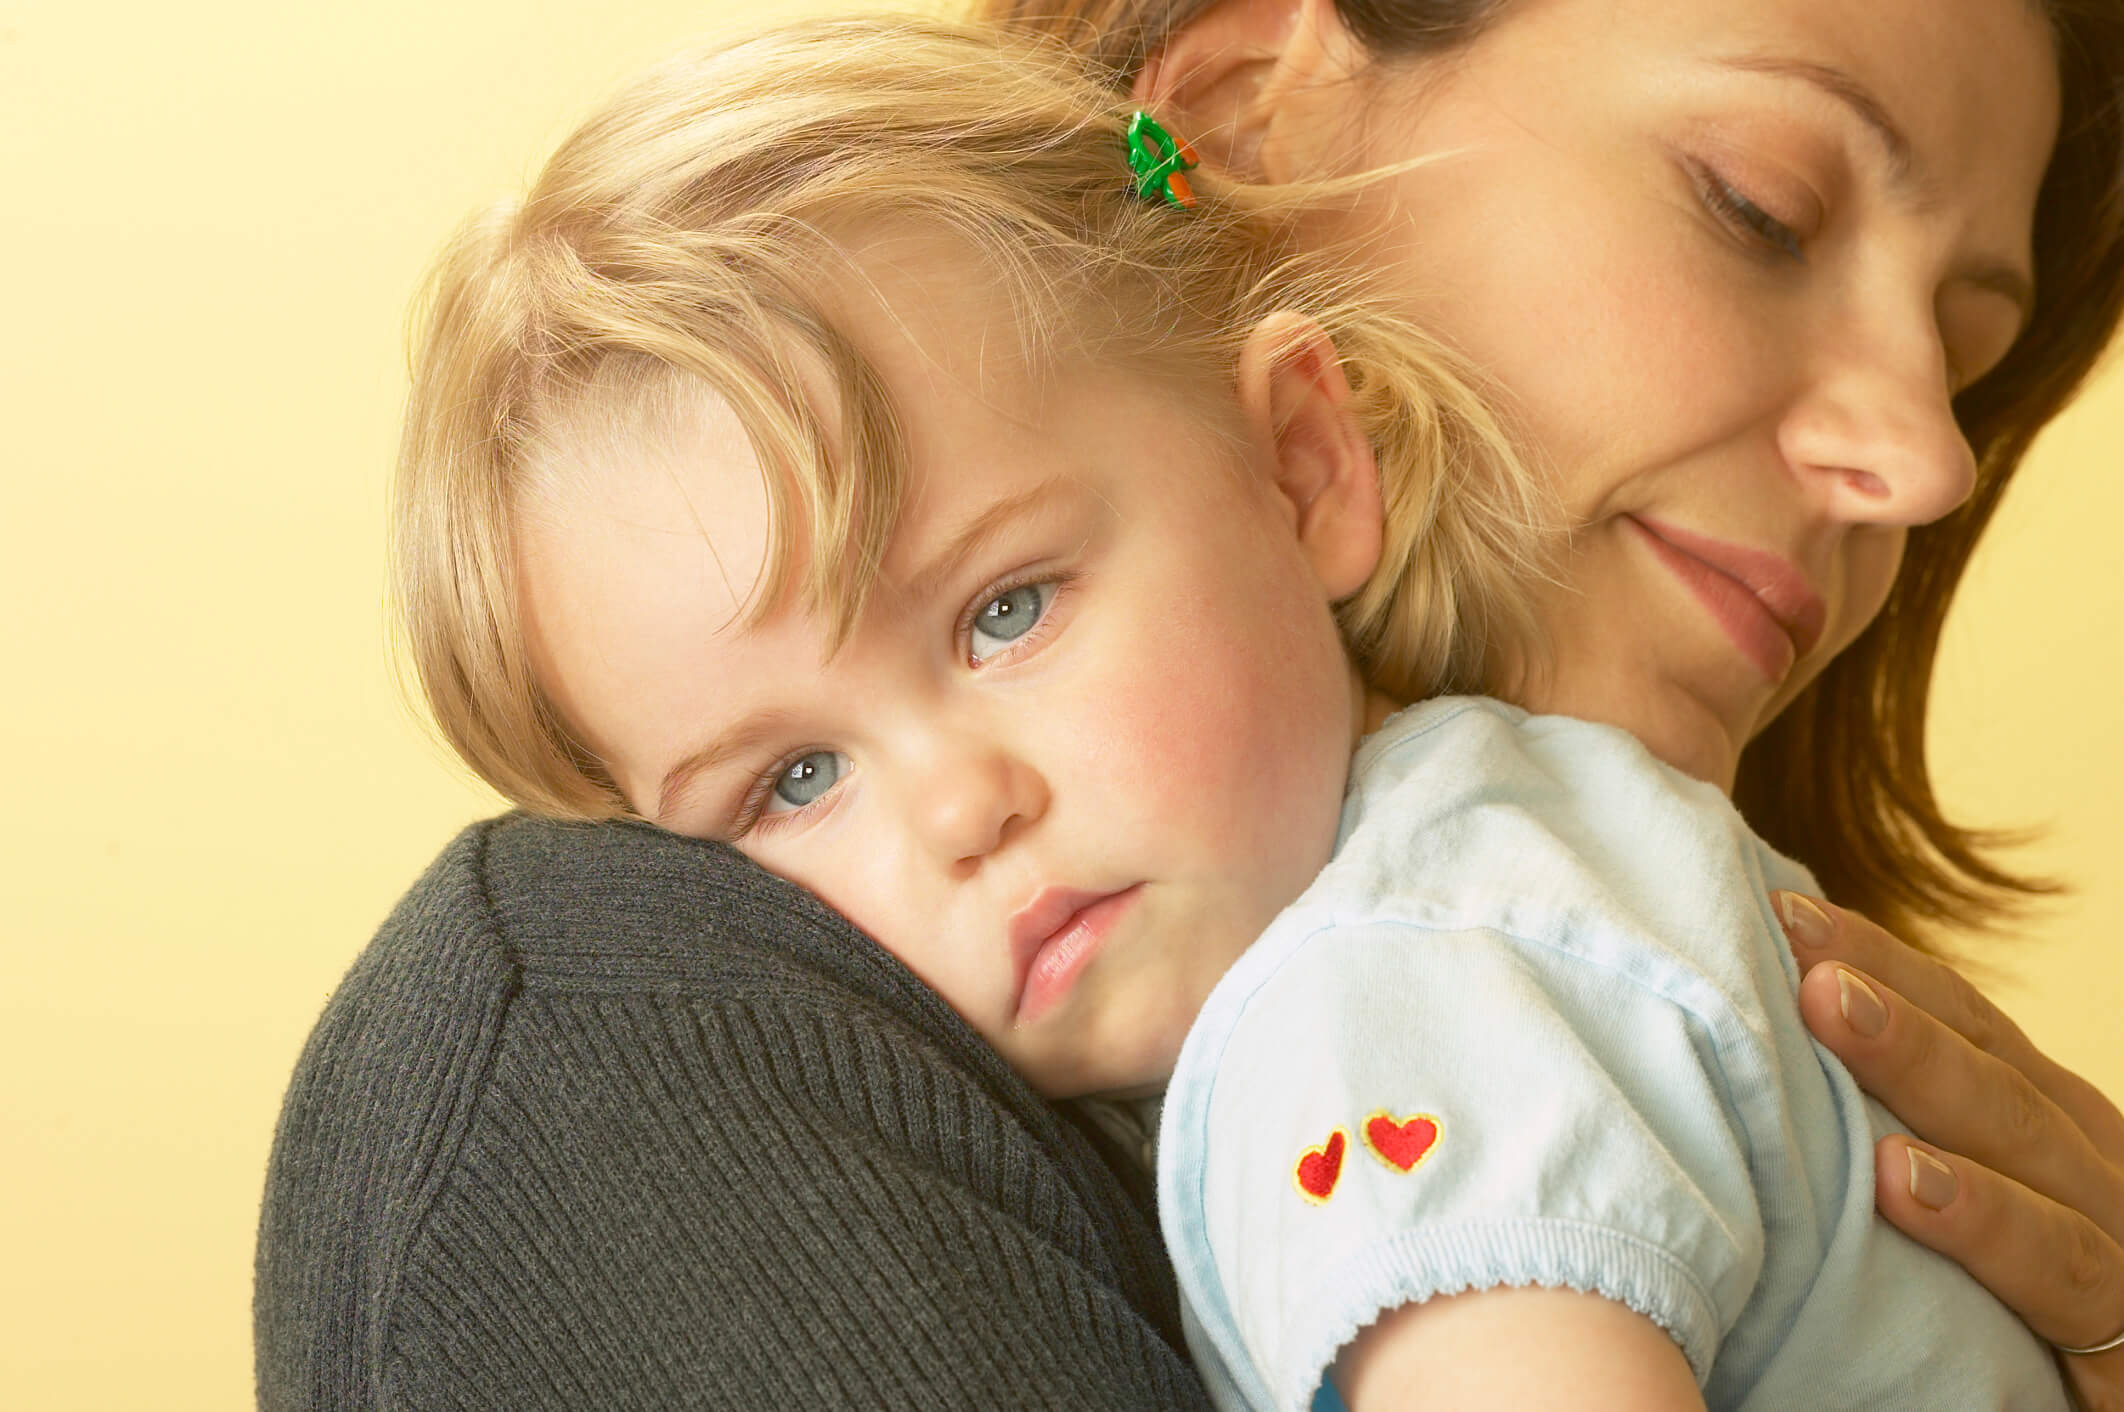 ОРВИ на пороге: как ее распознать и чем лечить ребенка при первых признаках простуды?